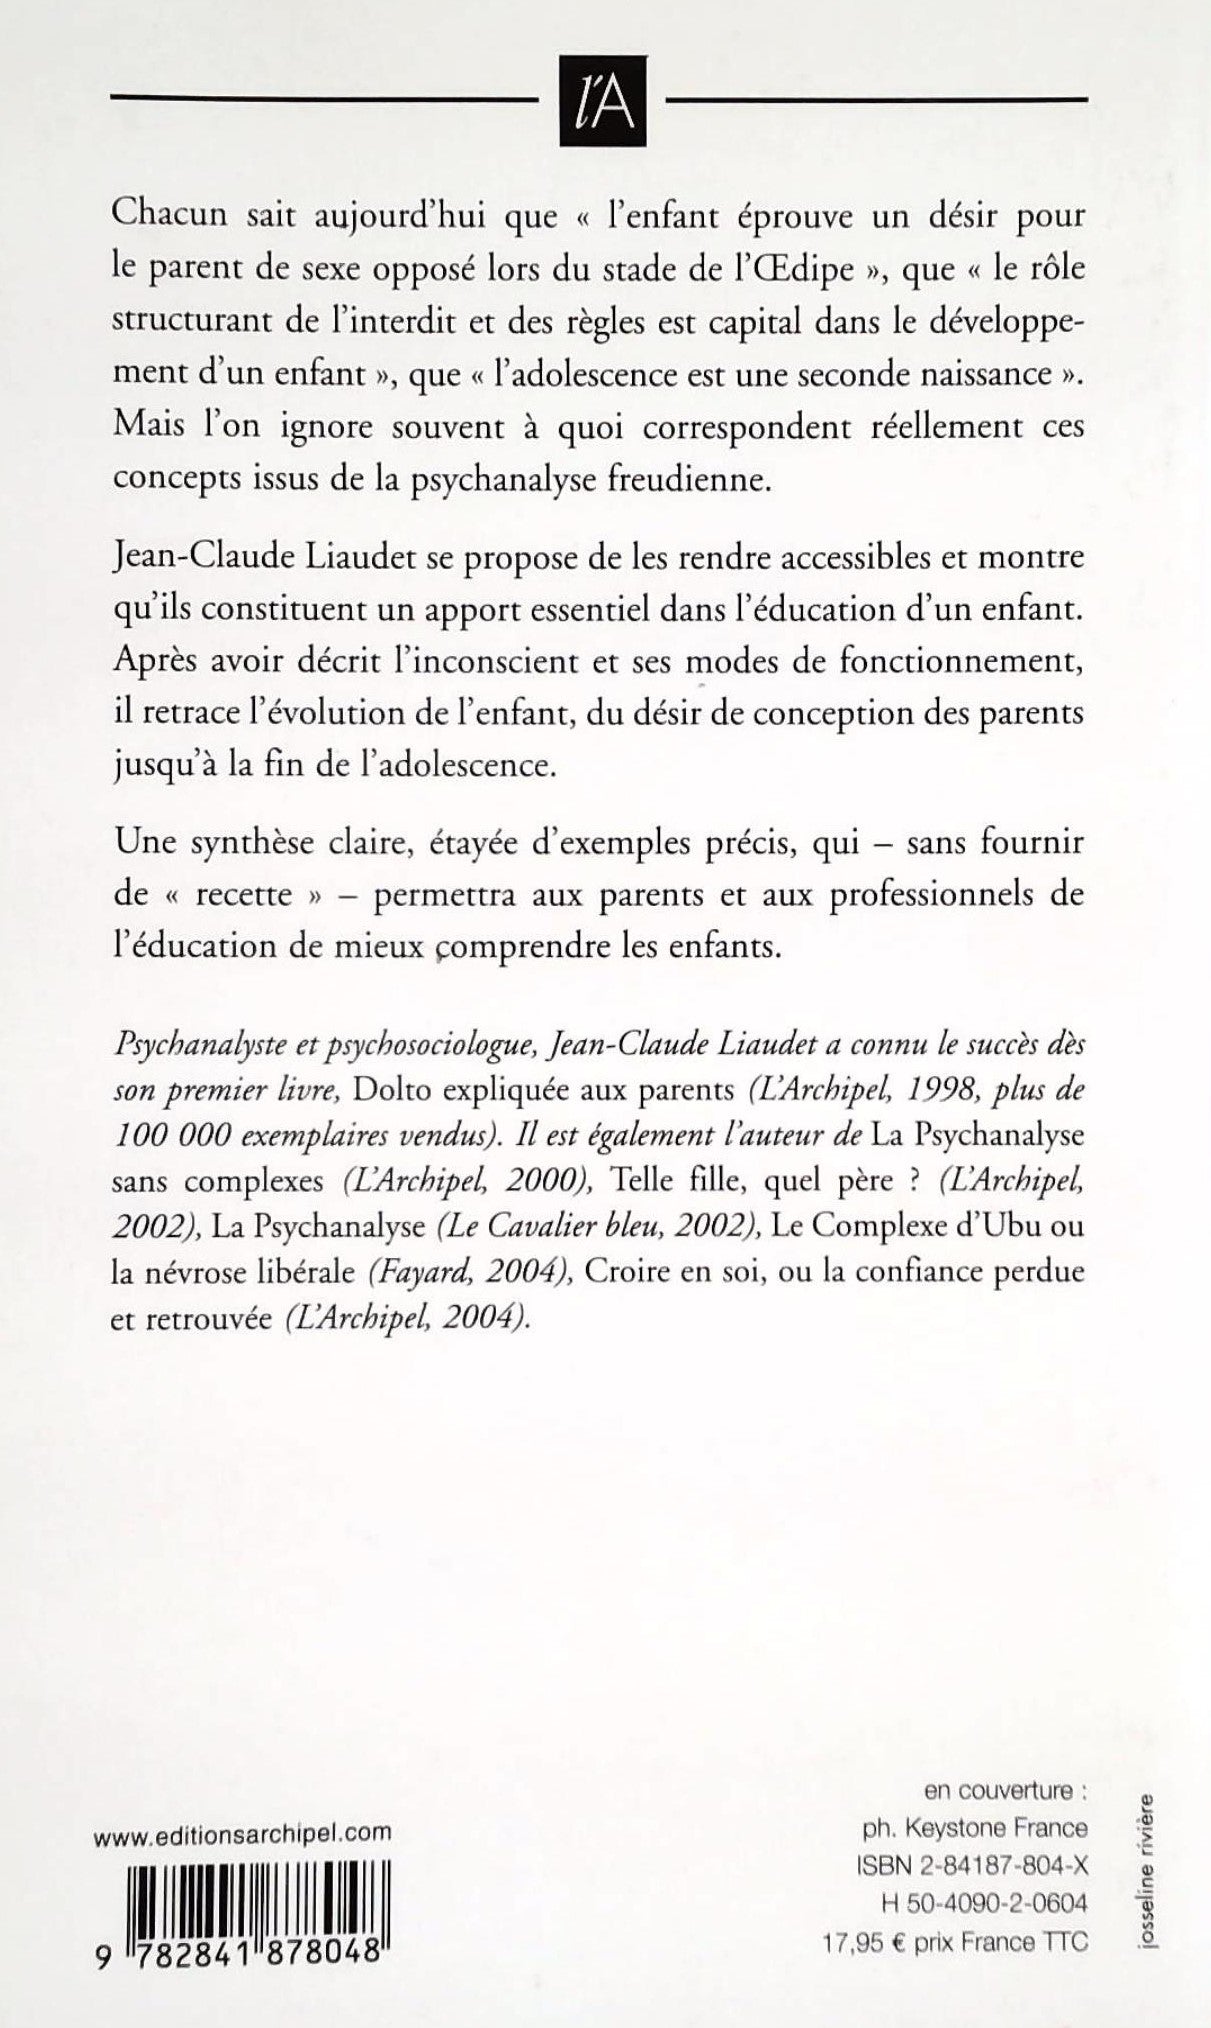 Freud pour les parents (Jean-Claude Liauder)